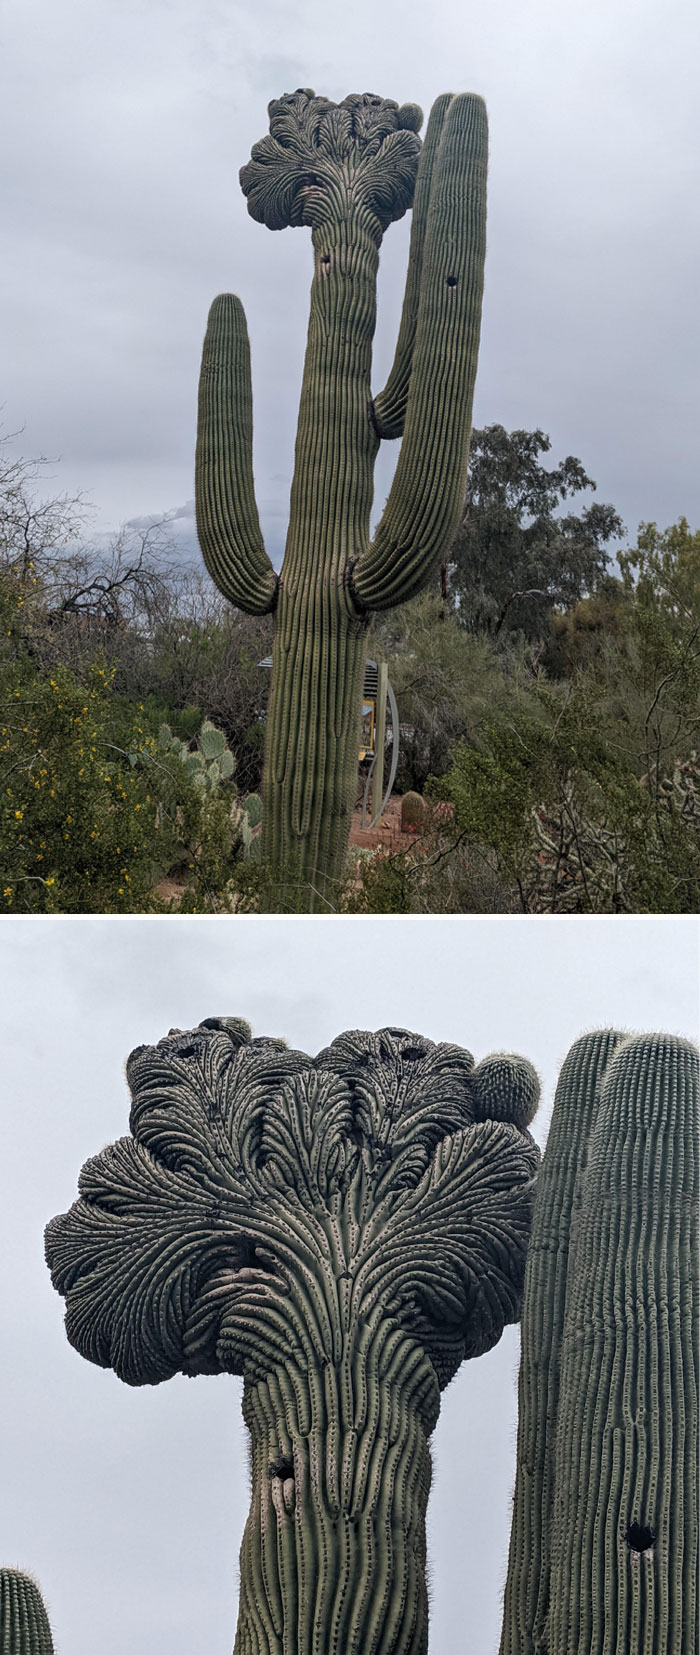 Fasciated Saguaro Specimen